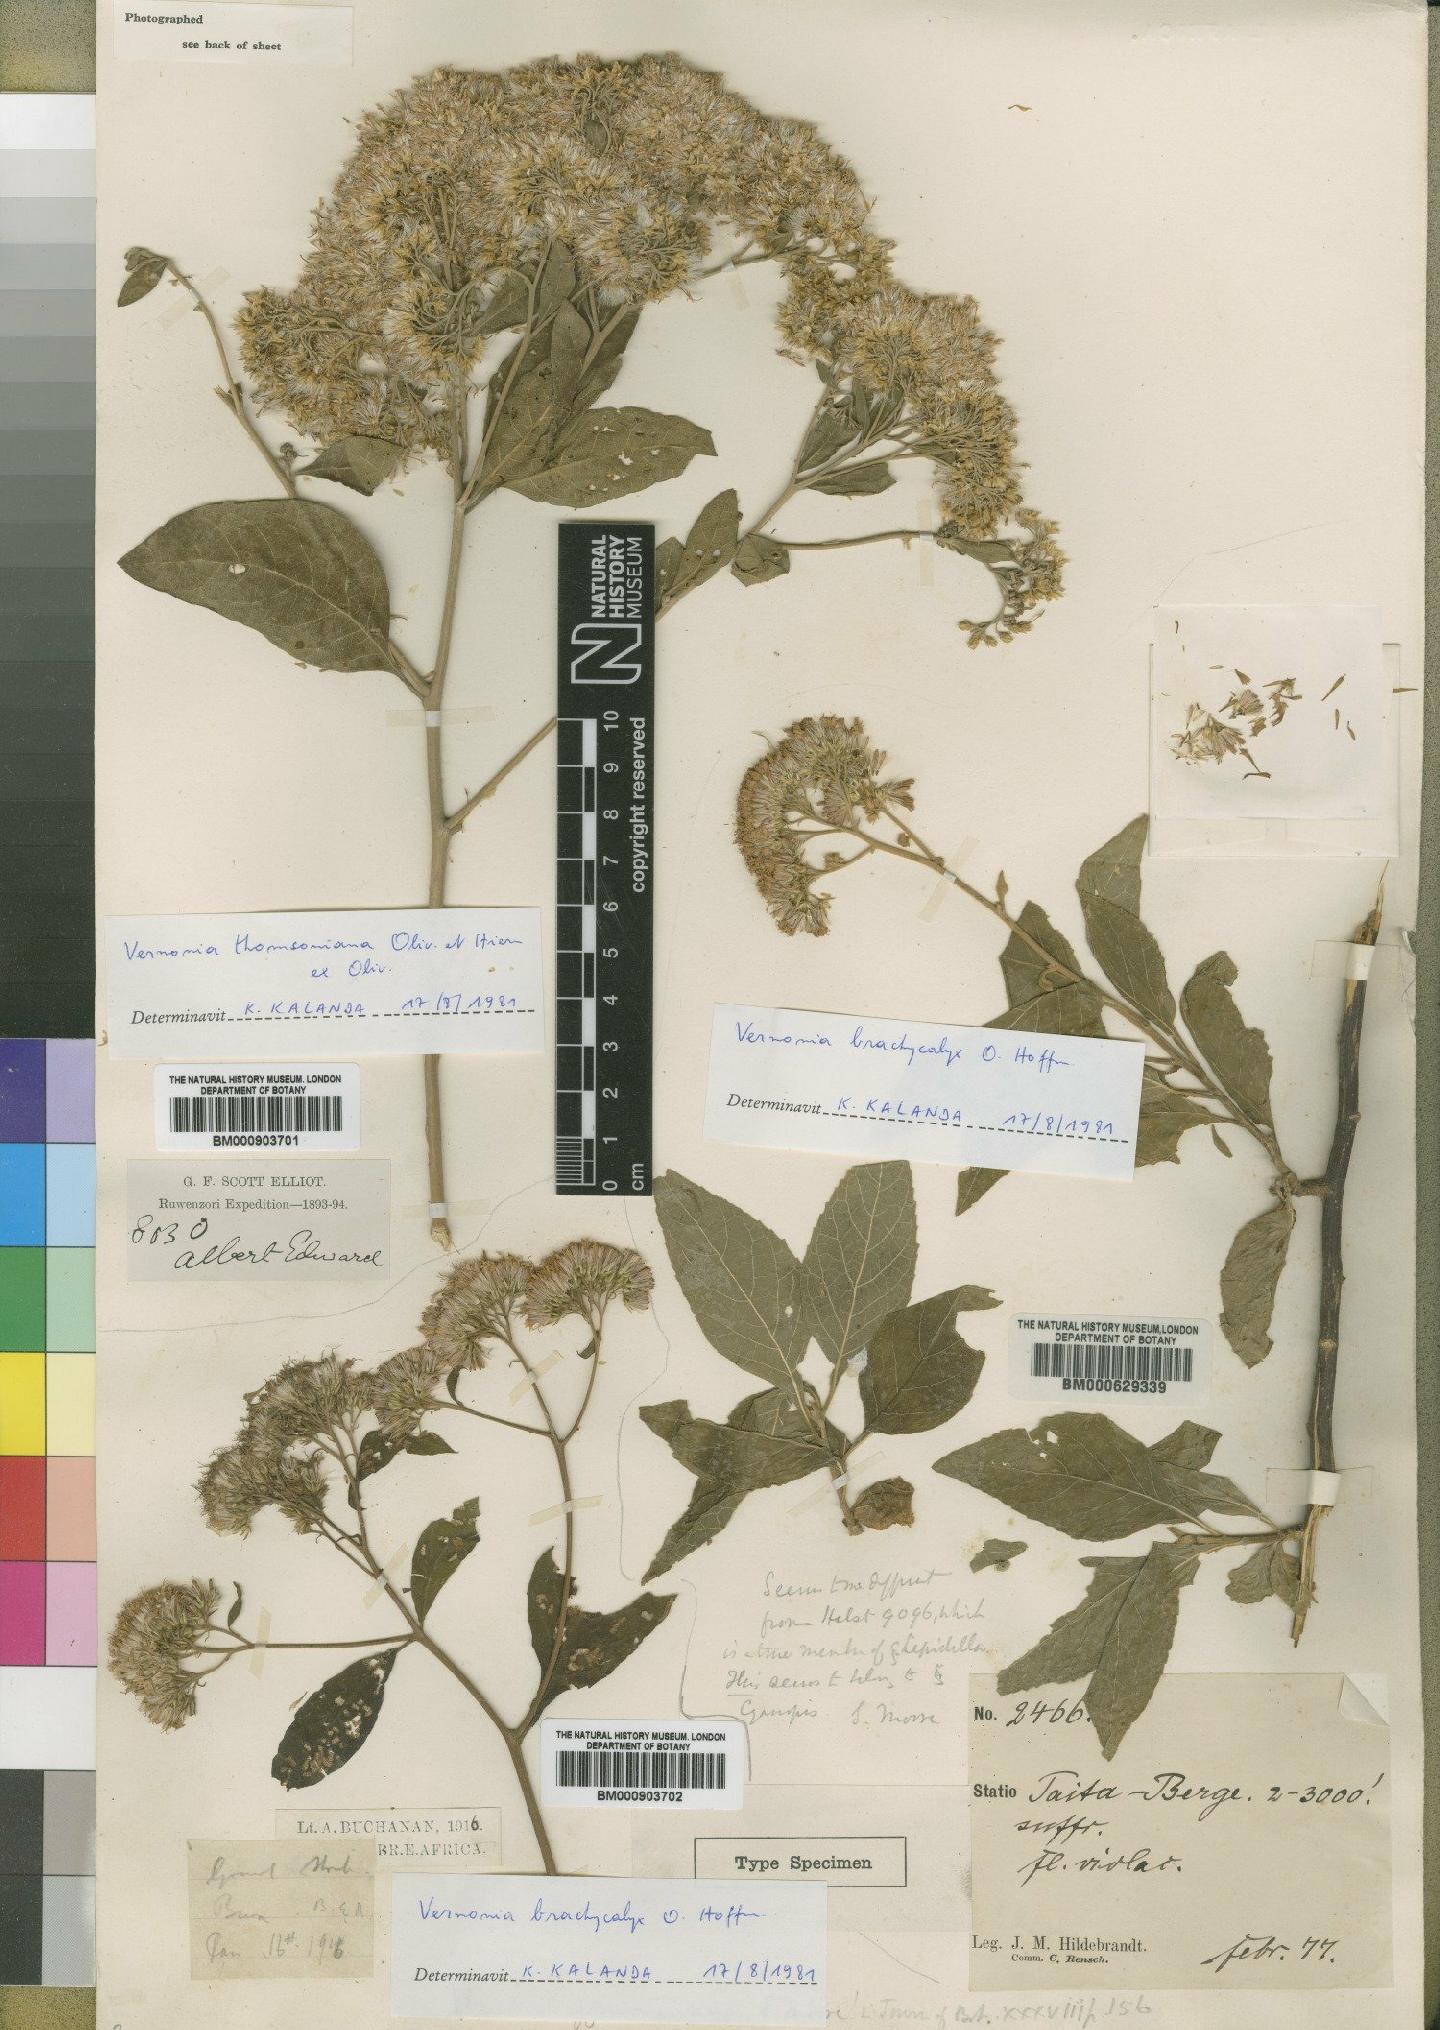 To NHMUK collection (Vernonia brachycalyx O.Hoffm.; NHMUK:ecatalogue:4528708)